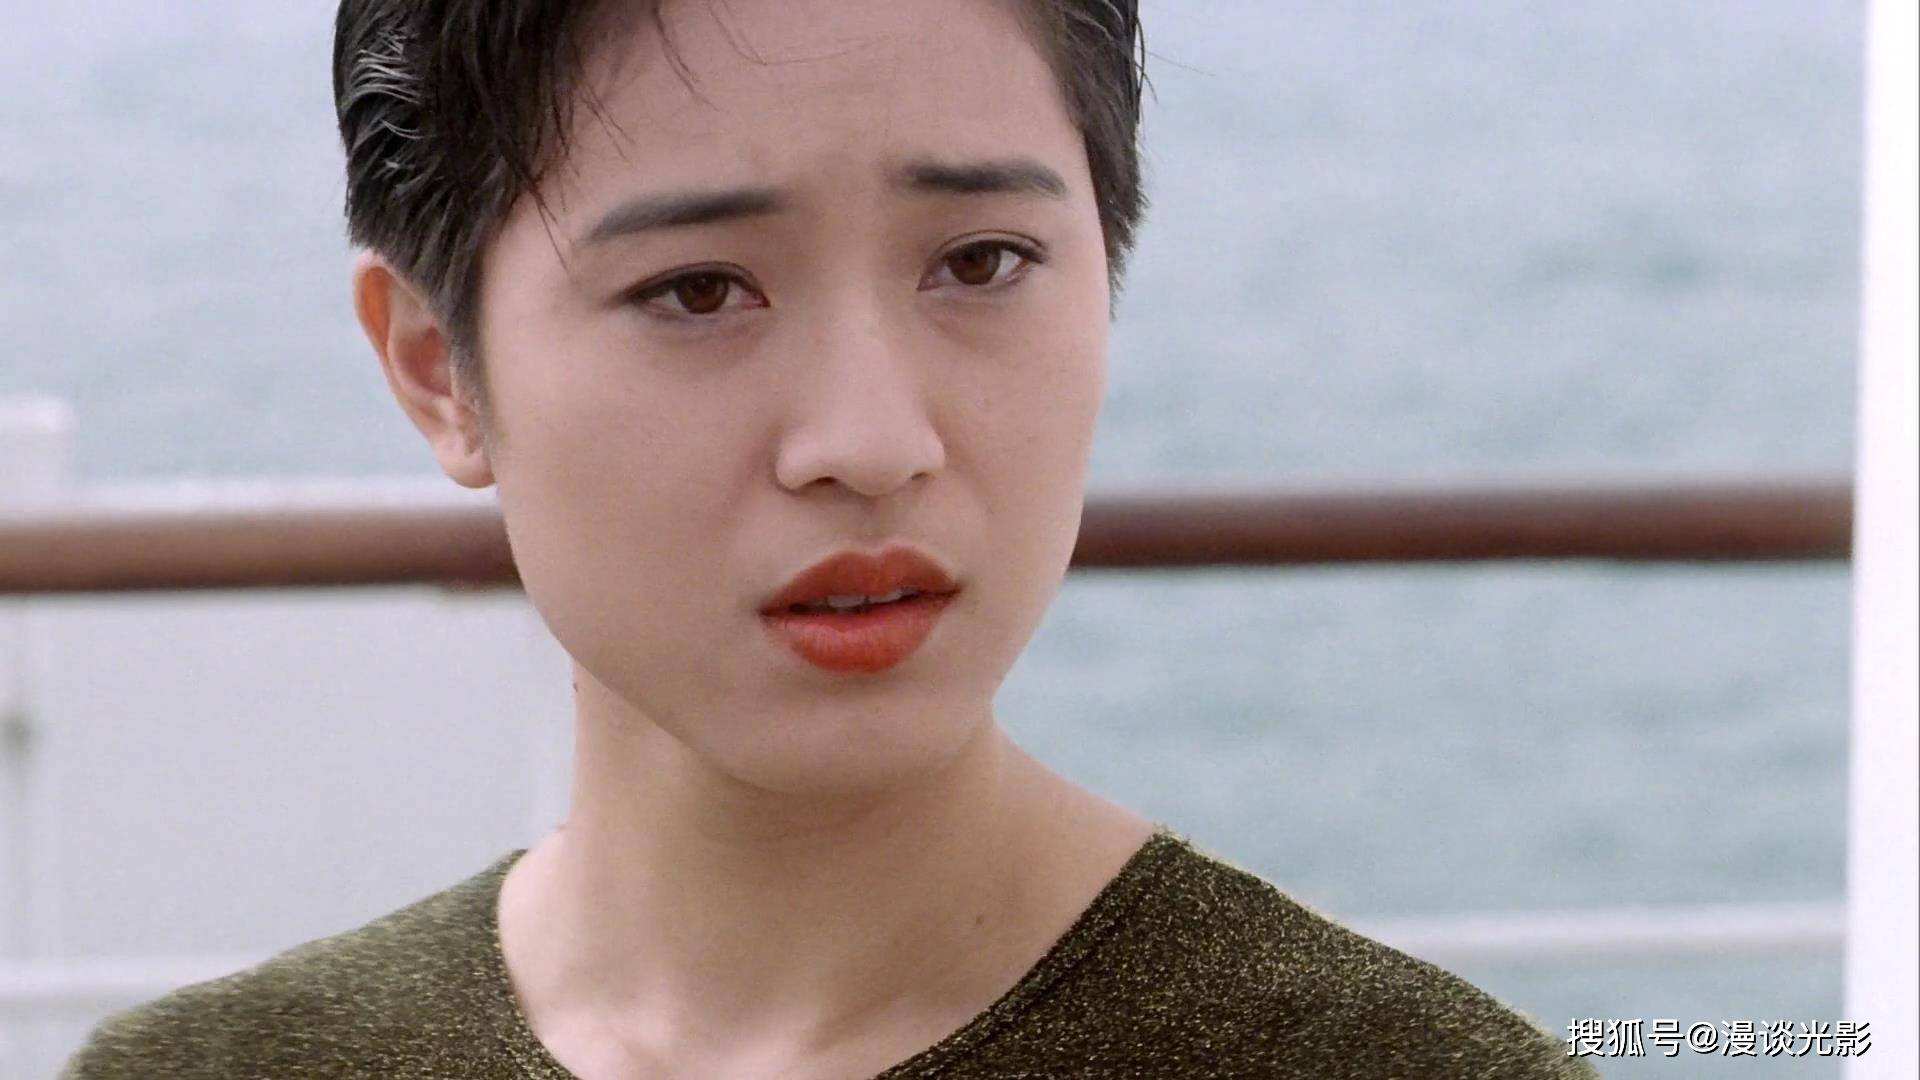 重温《刑事侦缉档案Ⅲ》的陈法蓉,让人难以忘怀的短发